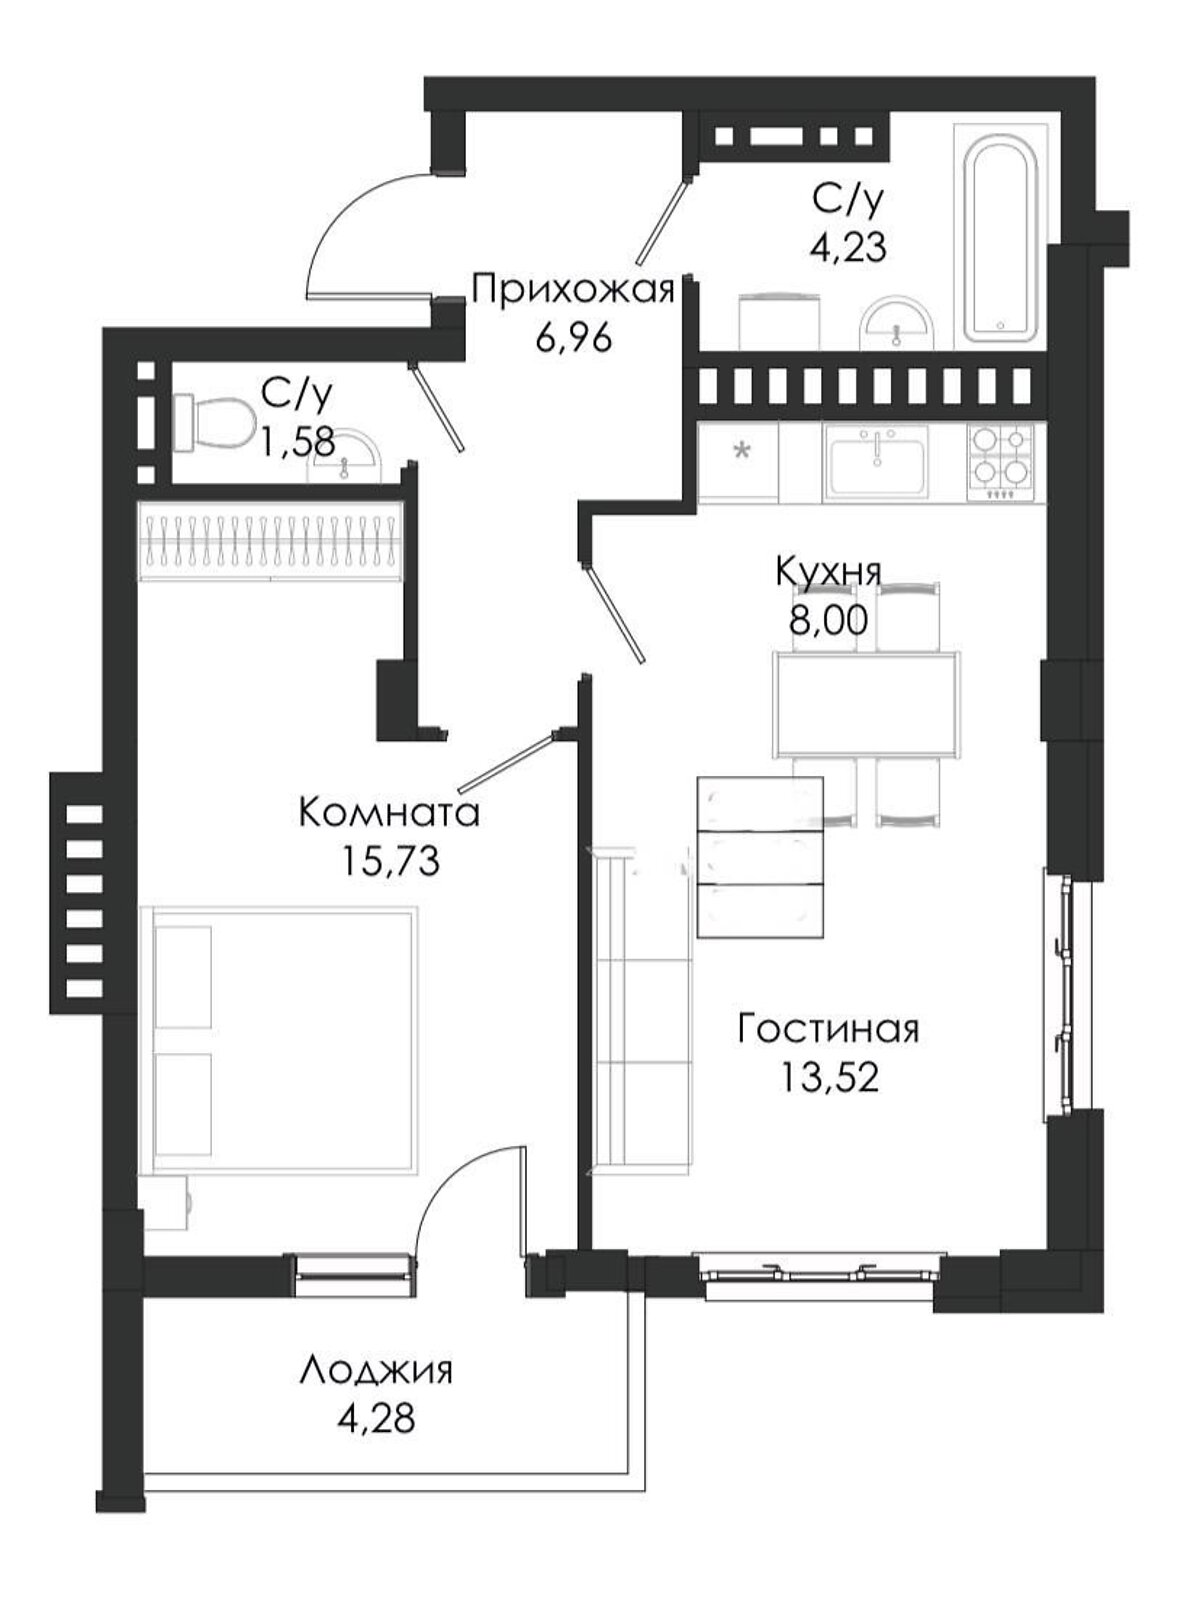 Продажа двухкомнатной квартиры в Крыжановка, на дор. Николаевская дорога 3, фото 1